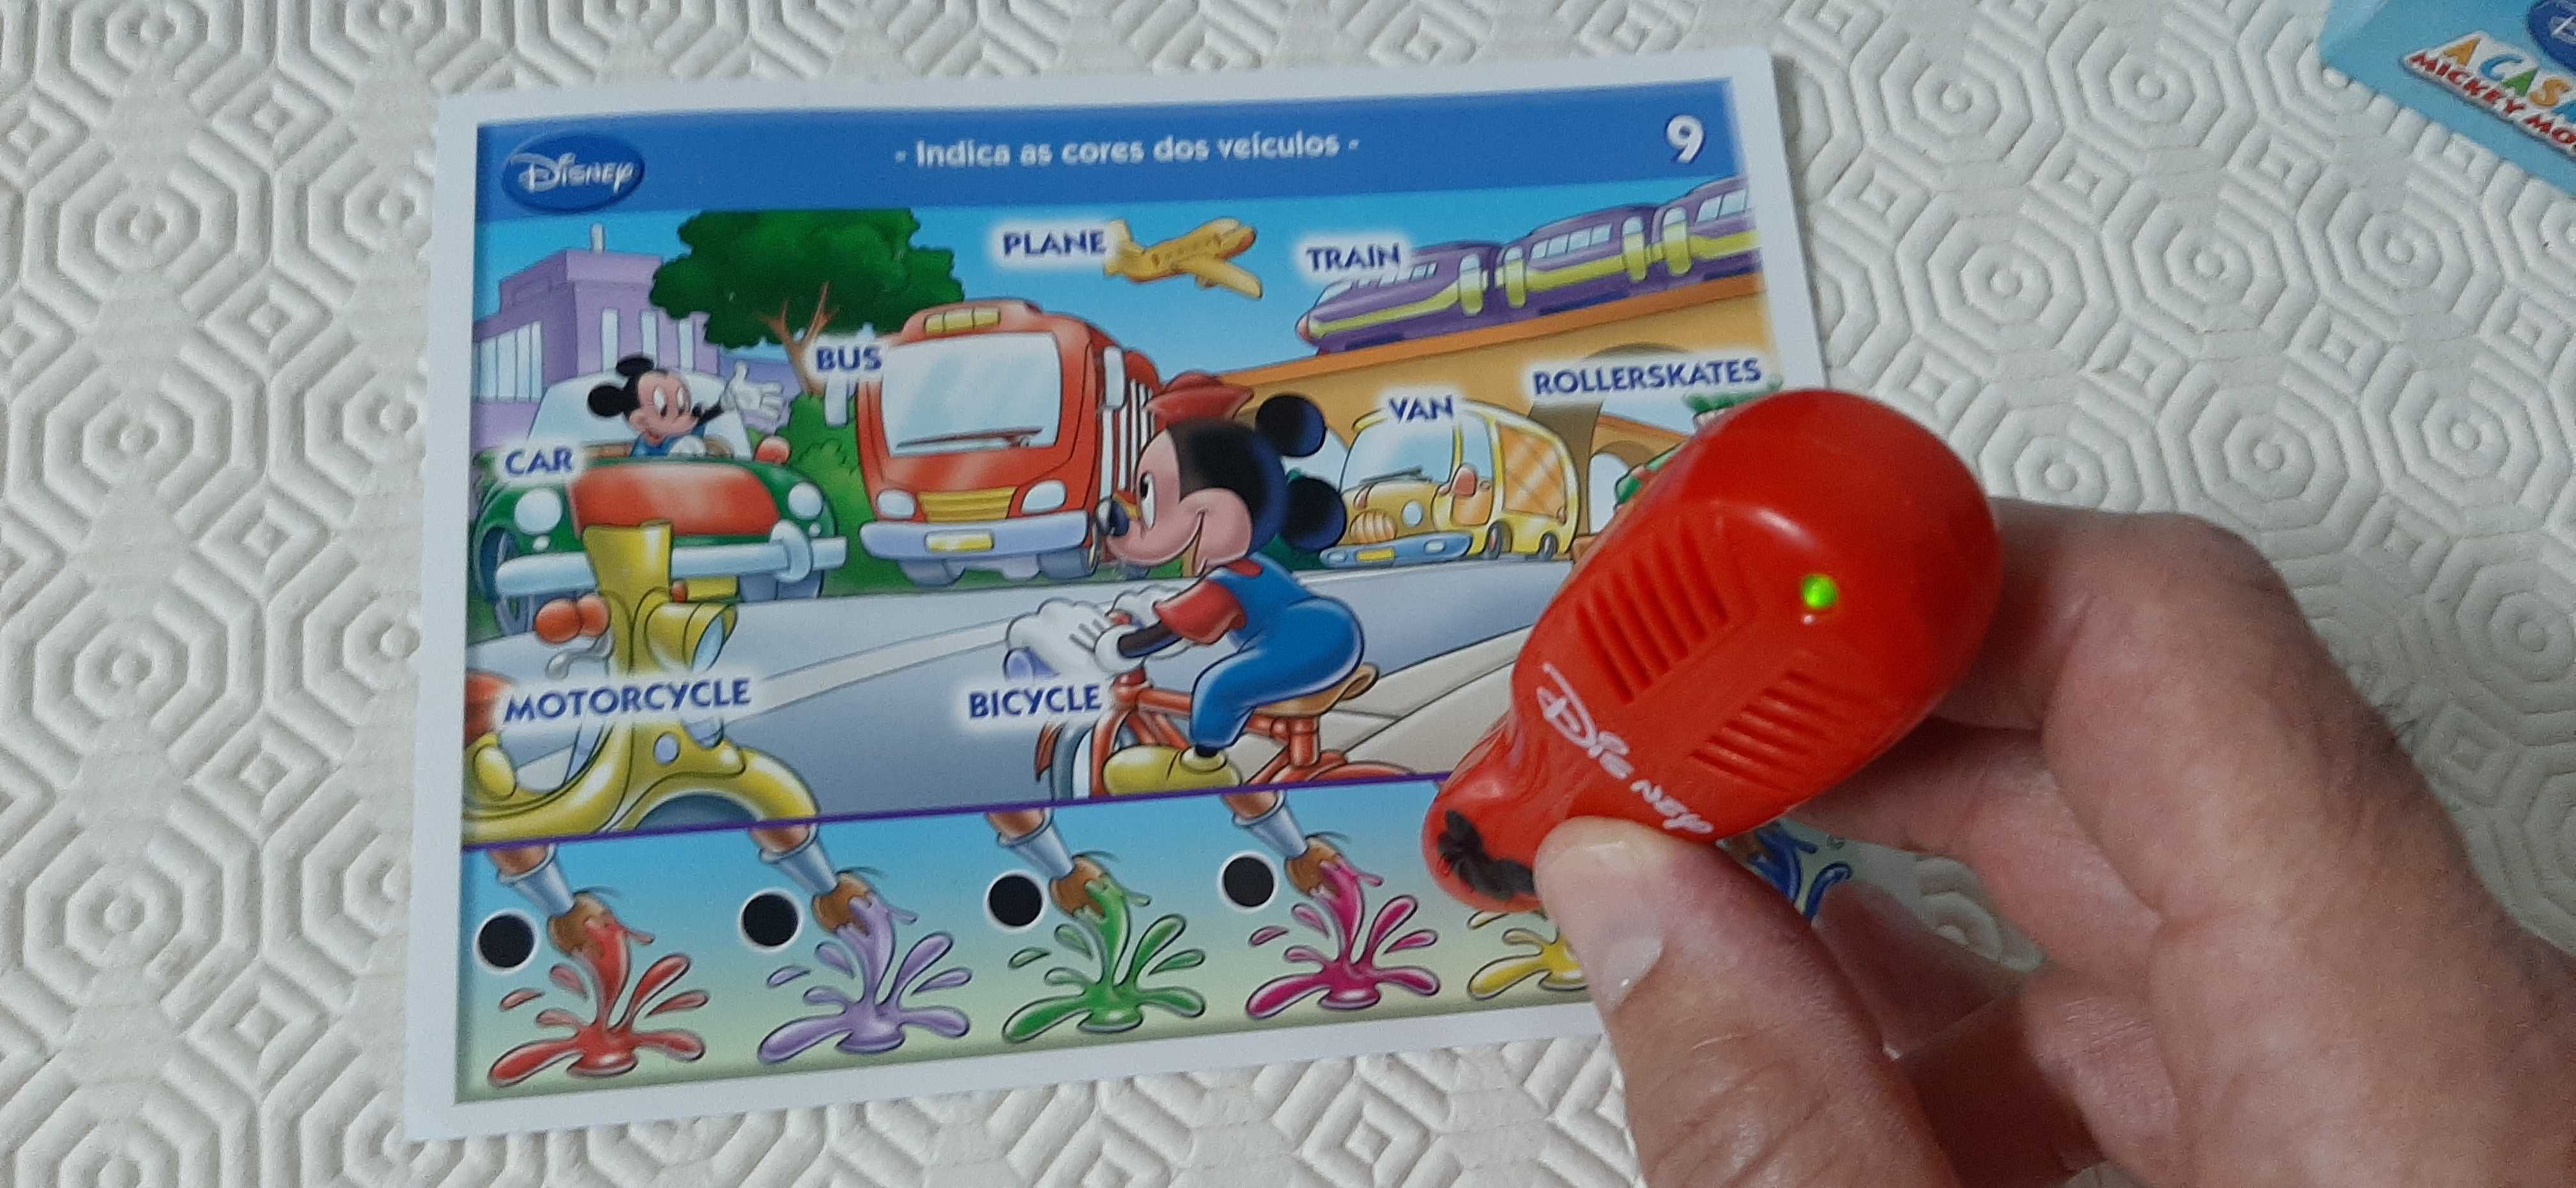 Jogo interativo "A Casa do Mickey" - para aprender inglês a brincar